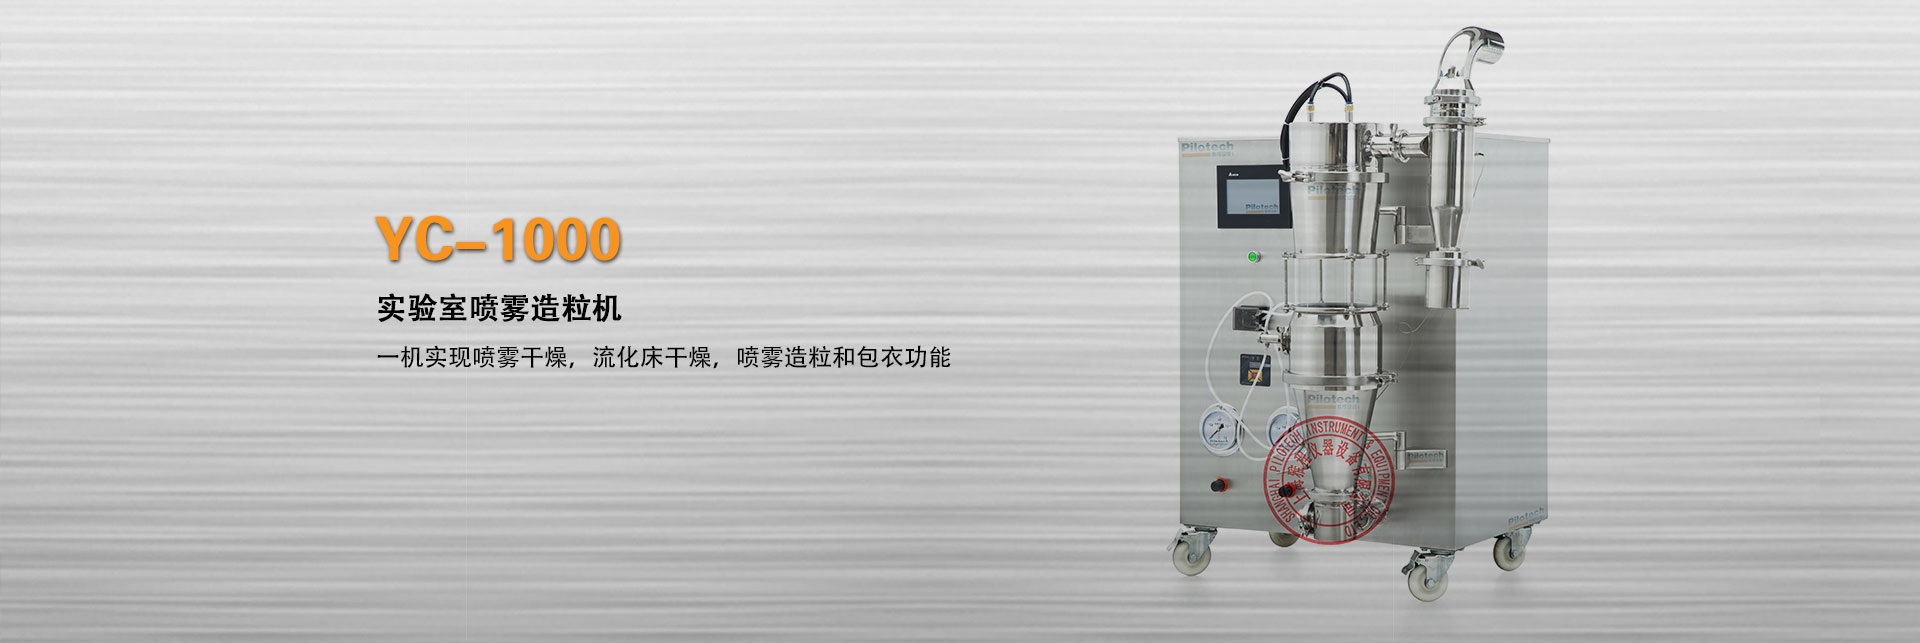 上海雅程实验室喷雾造粒机